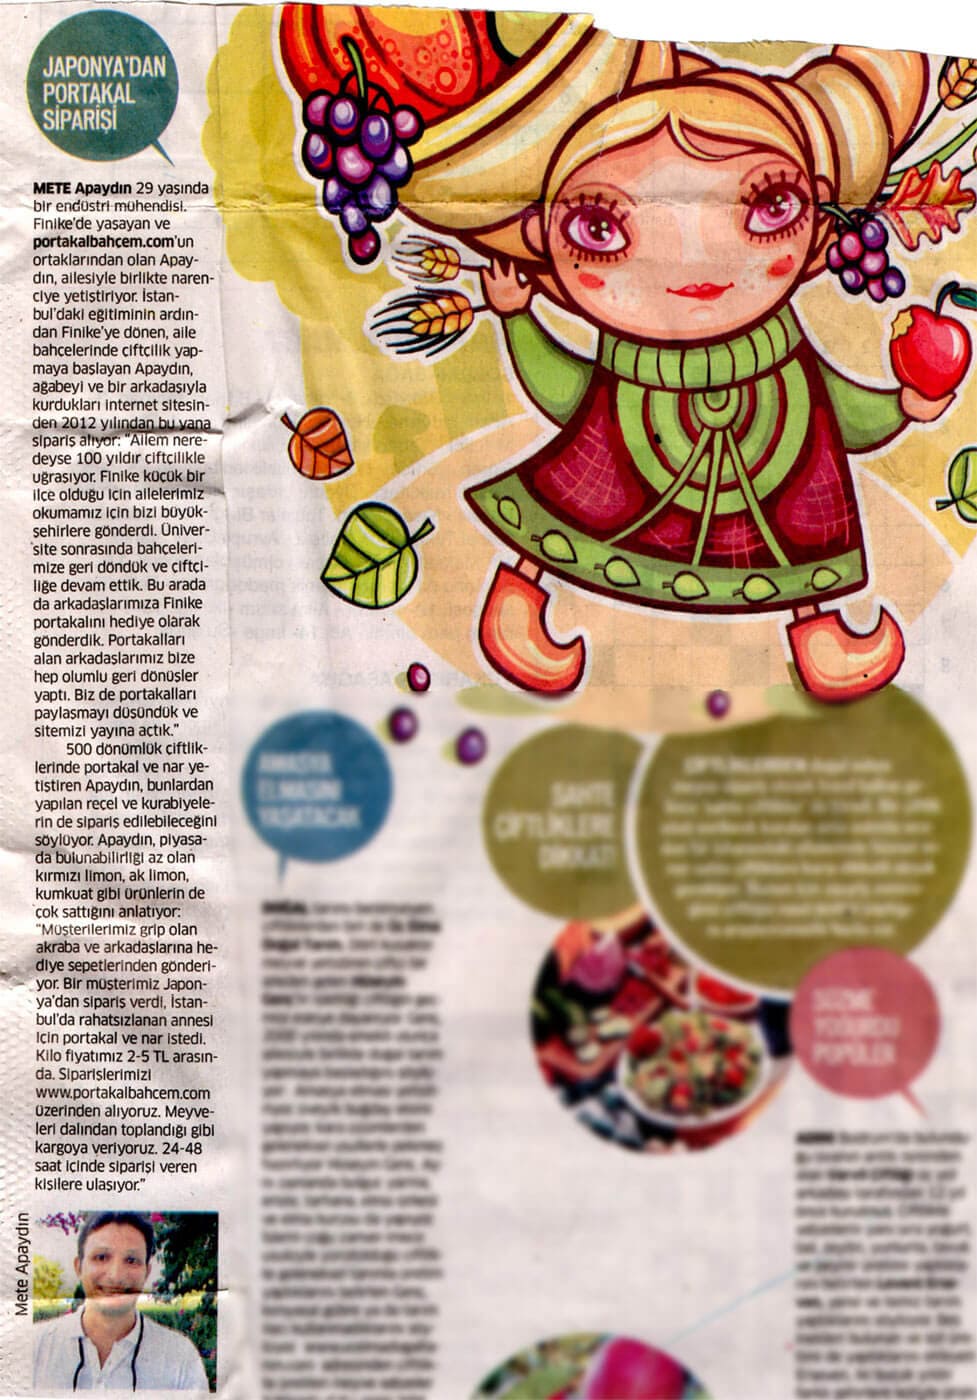 portakalbahcem.com Star Pazar / 2 Şubat 2014